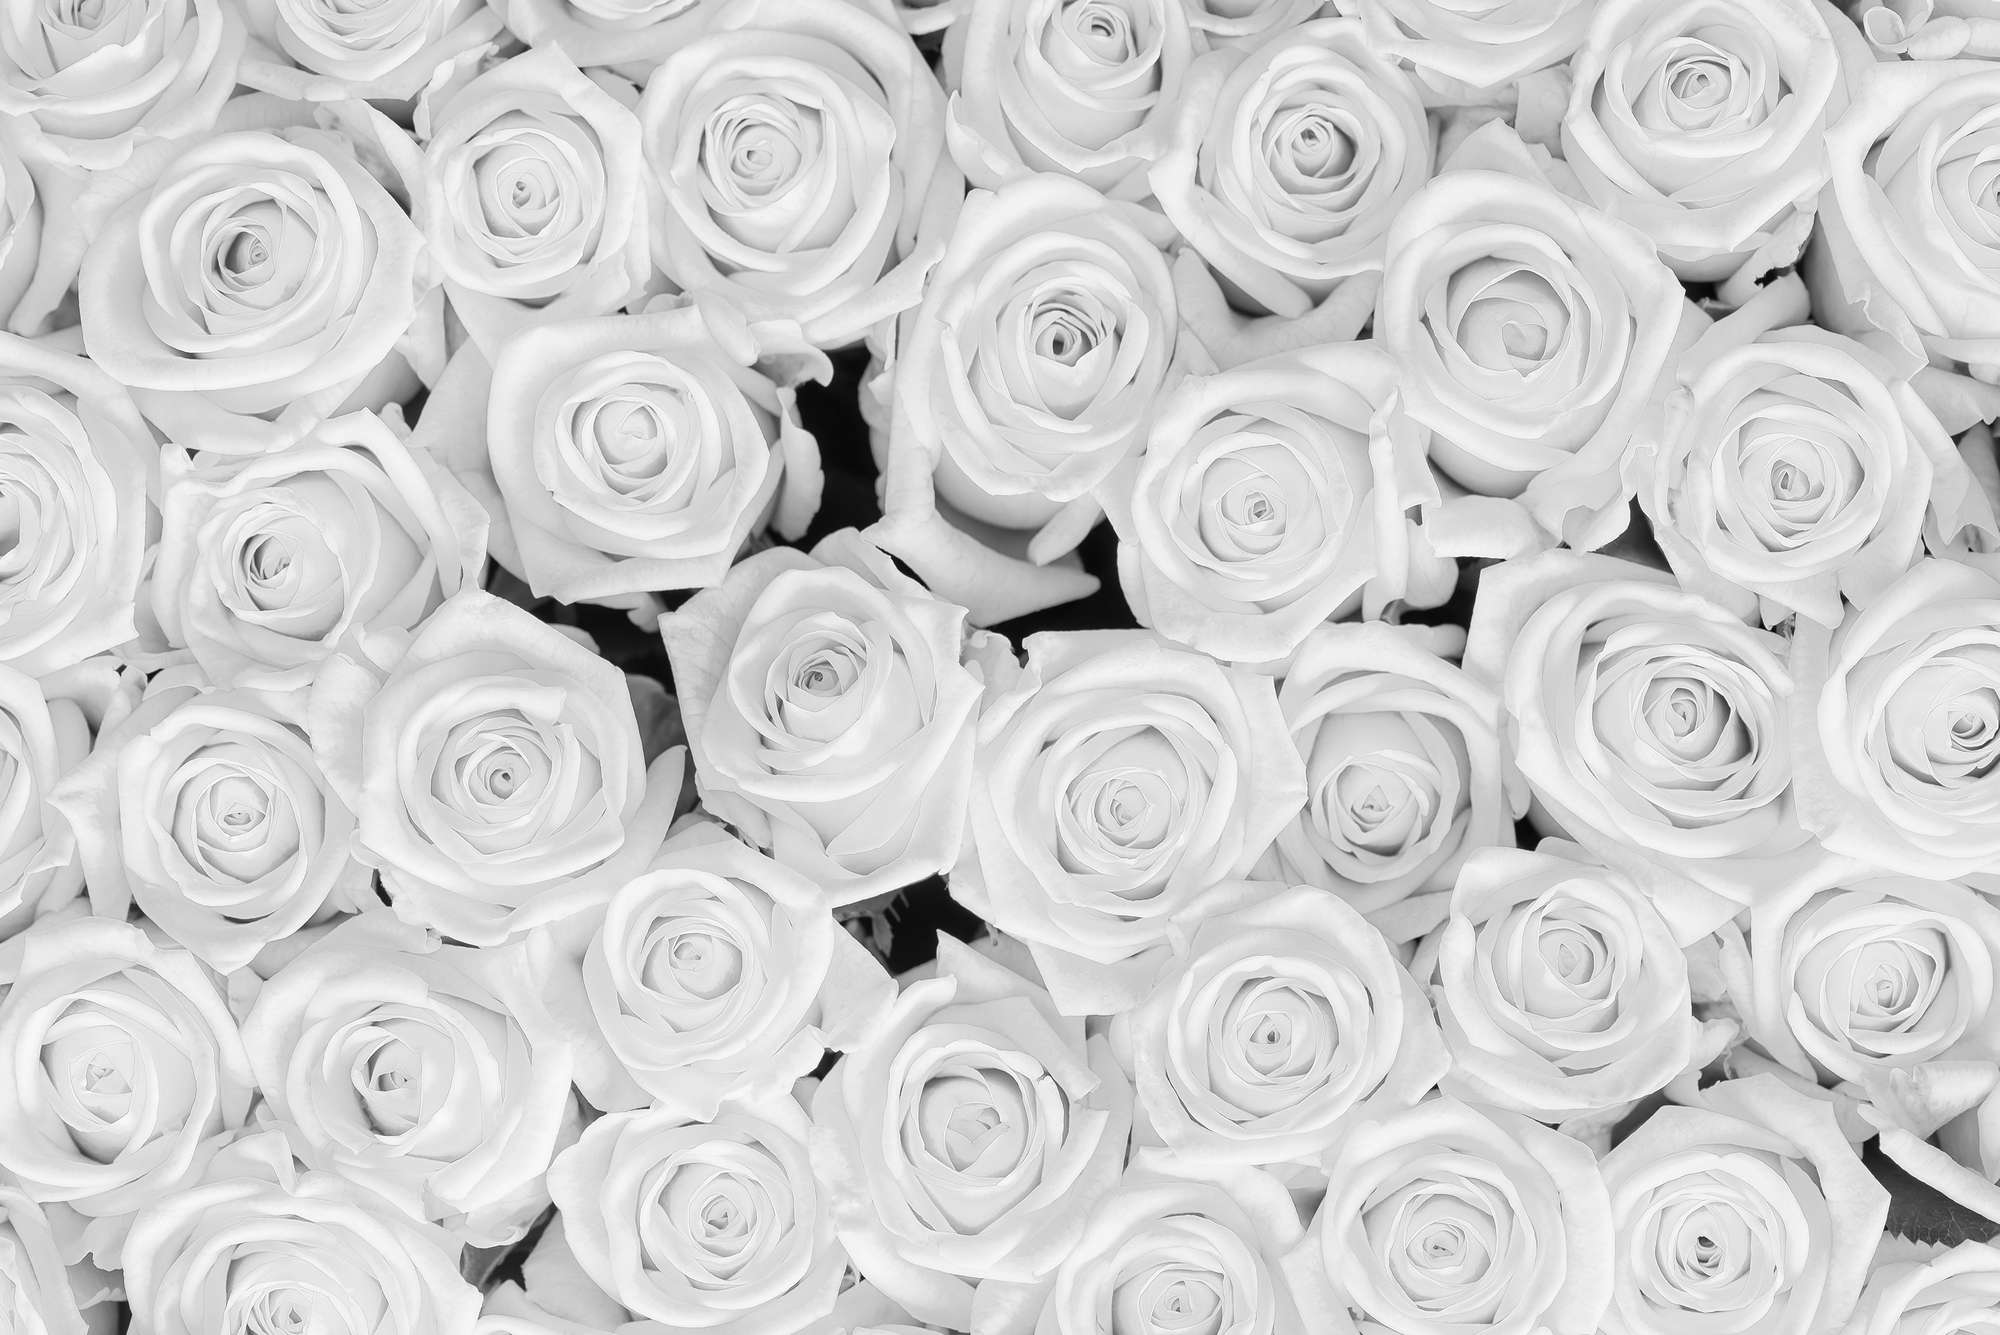             Plants mural white roses on textured fleece
        